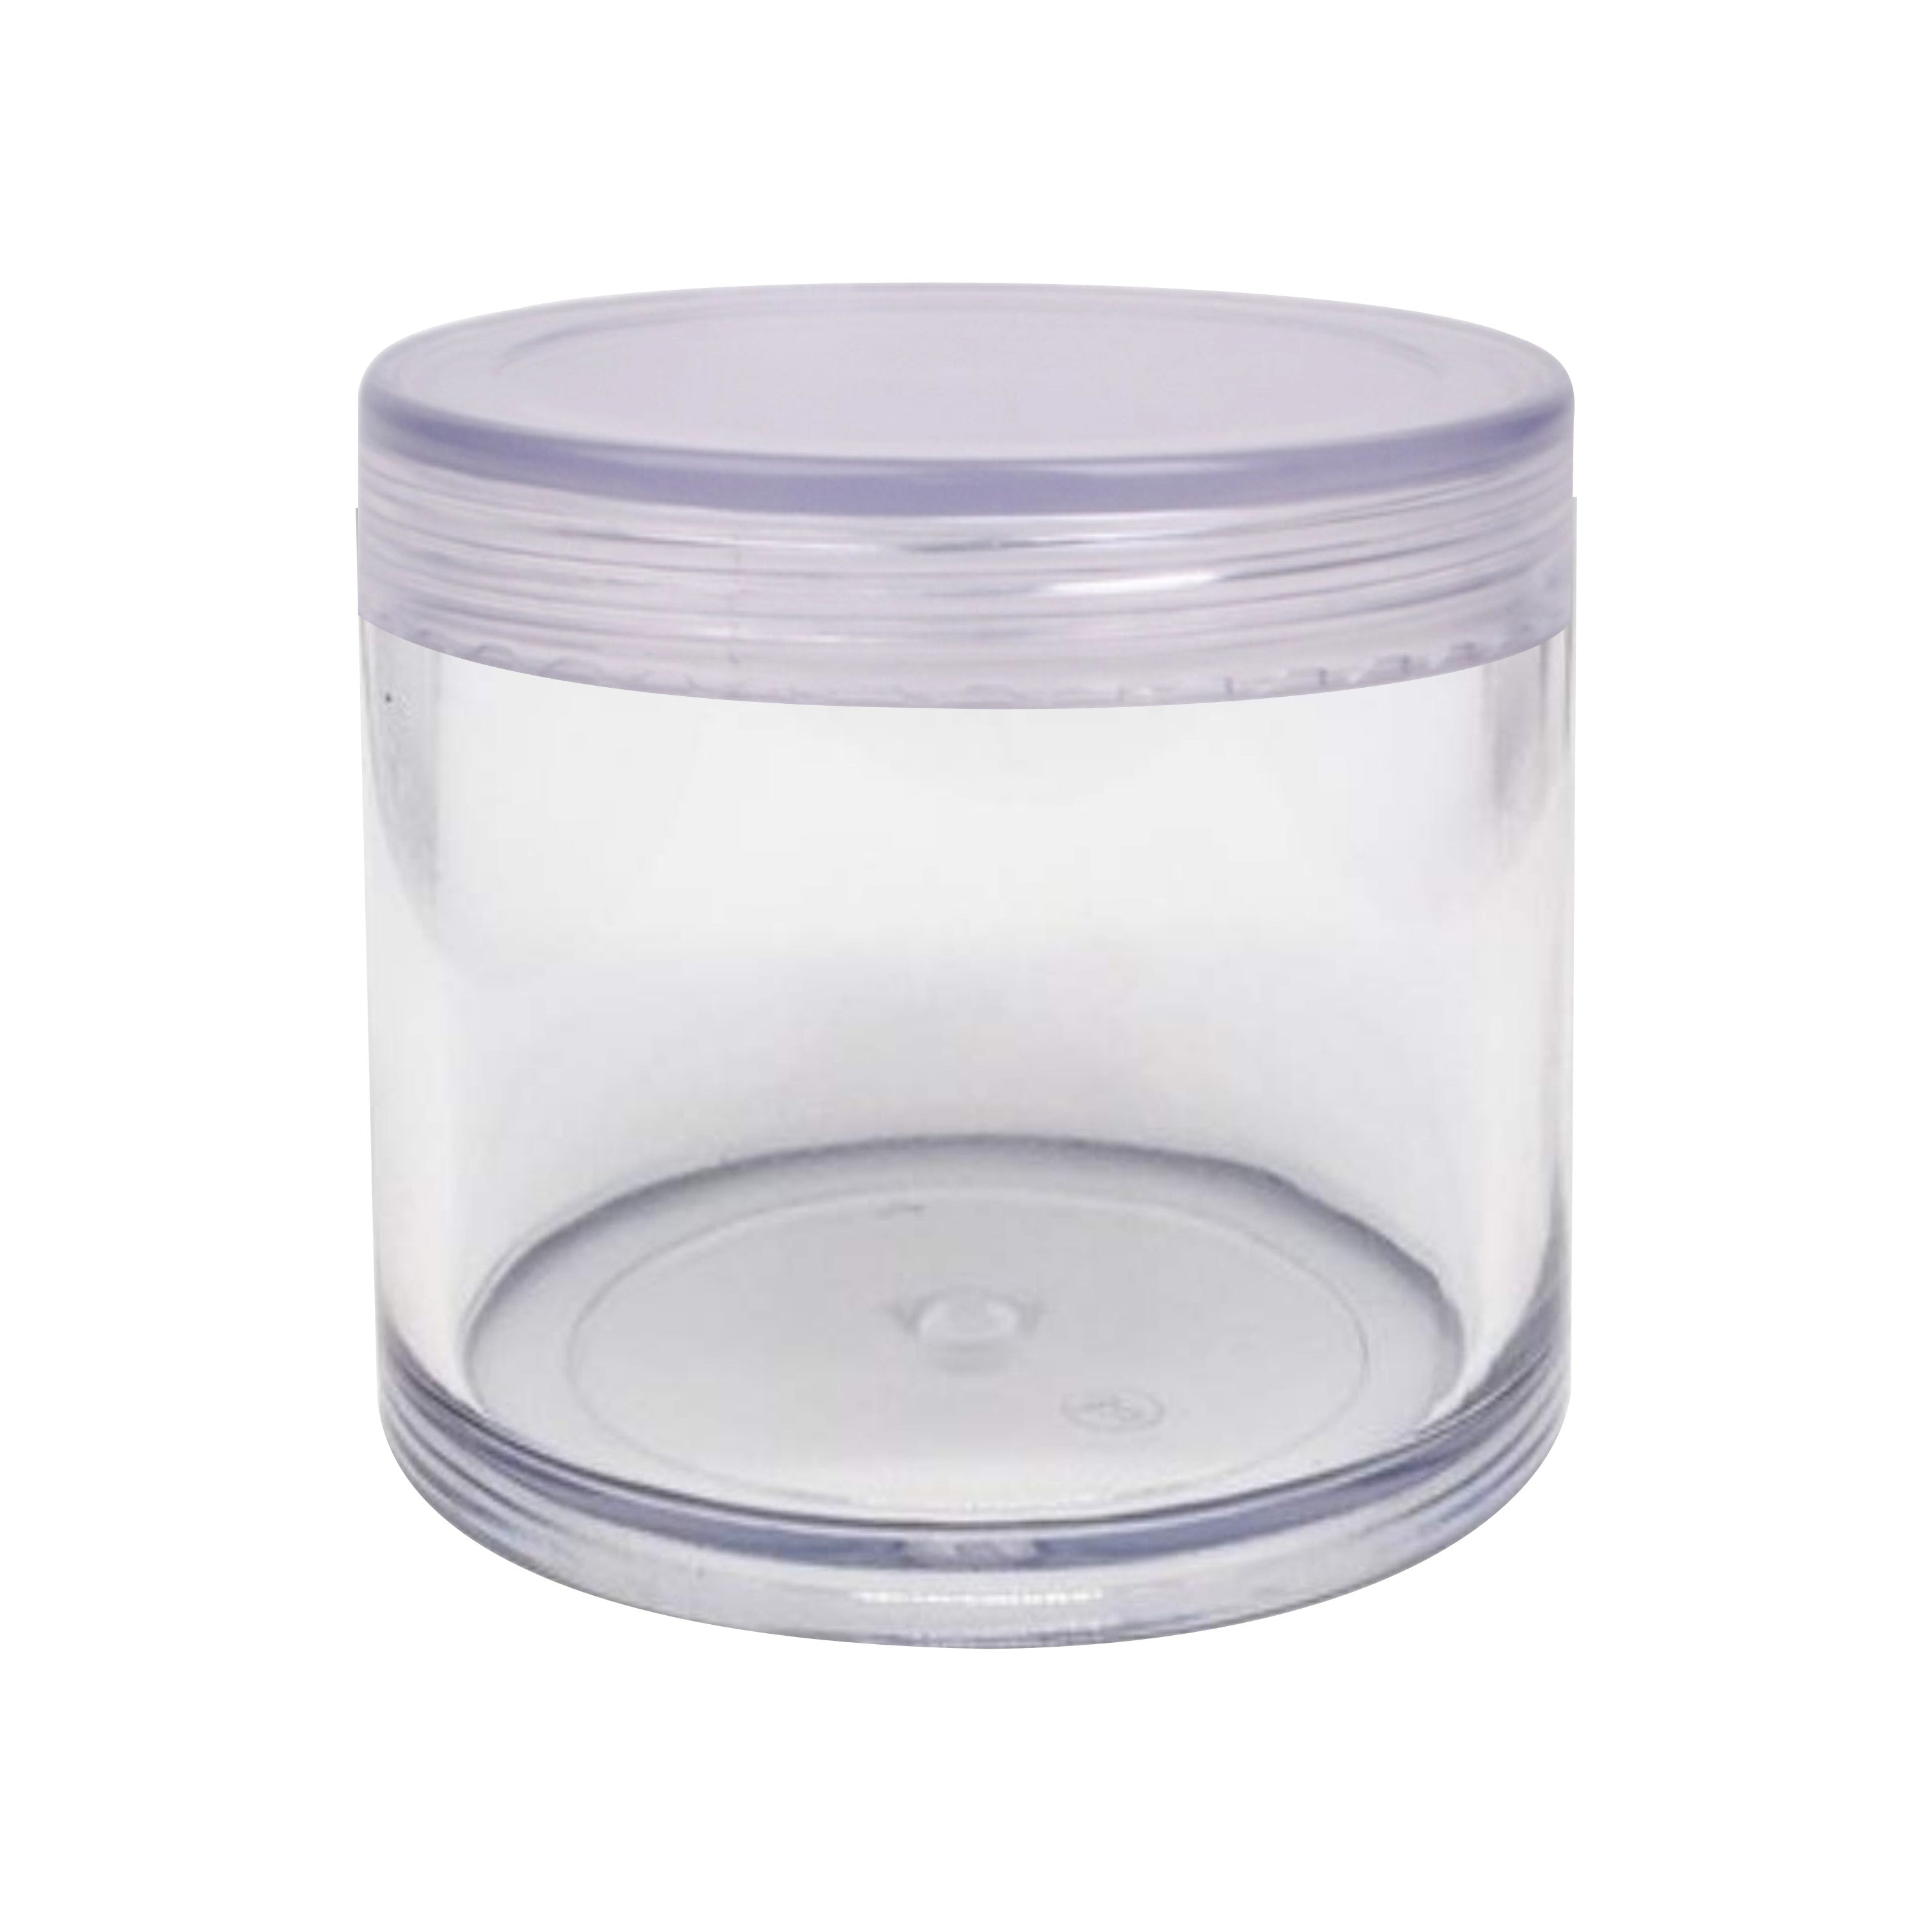 8gm, 15gm, 30gm, 50gm, 100gm, shan jar, shan jar with white lid cap, transparent jar, pet jar, roll on bottle, san jar, pet bottles, empty bottle, glass jar, 50gm acrylic jar, 8gm shan jar, Transparent Acrylic Shan San Jar